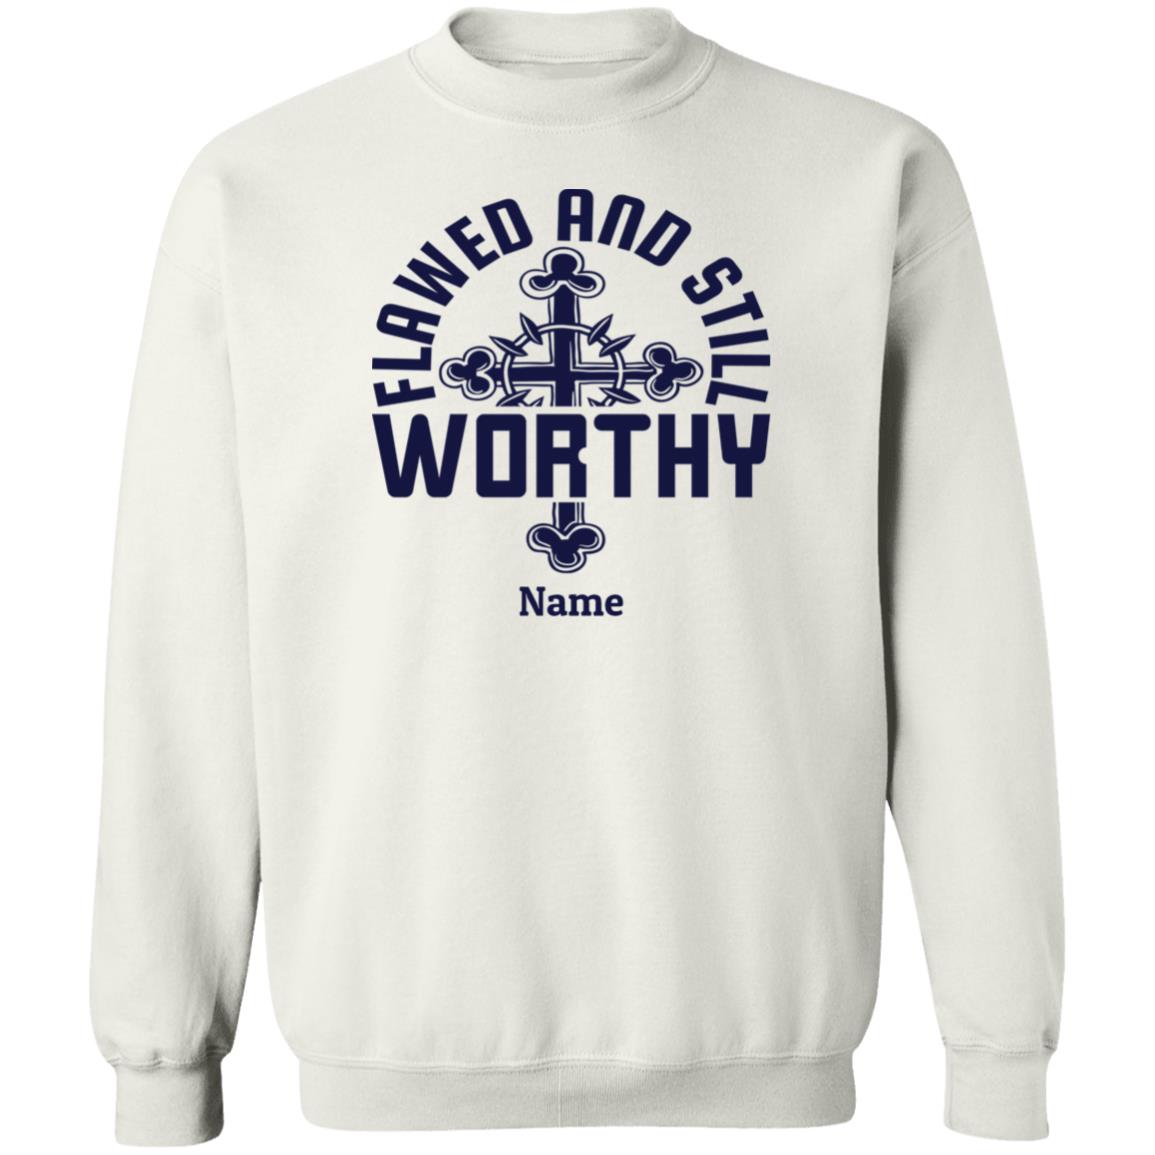 Flawed & Still Worthy Personalizable Sweatshirt